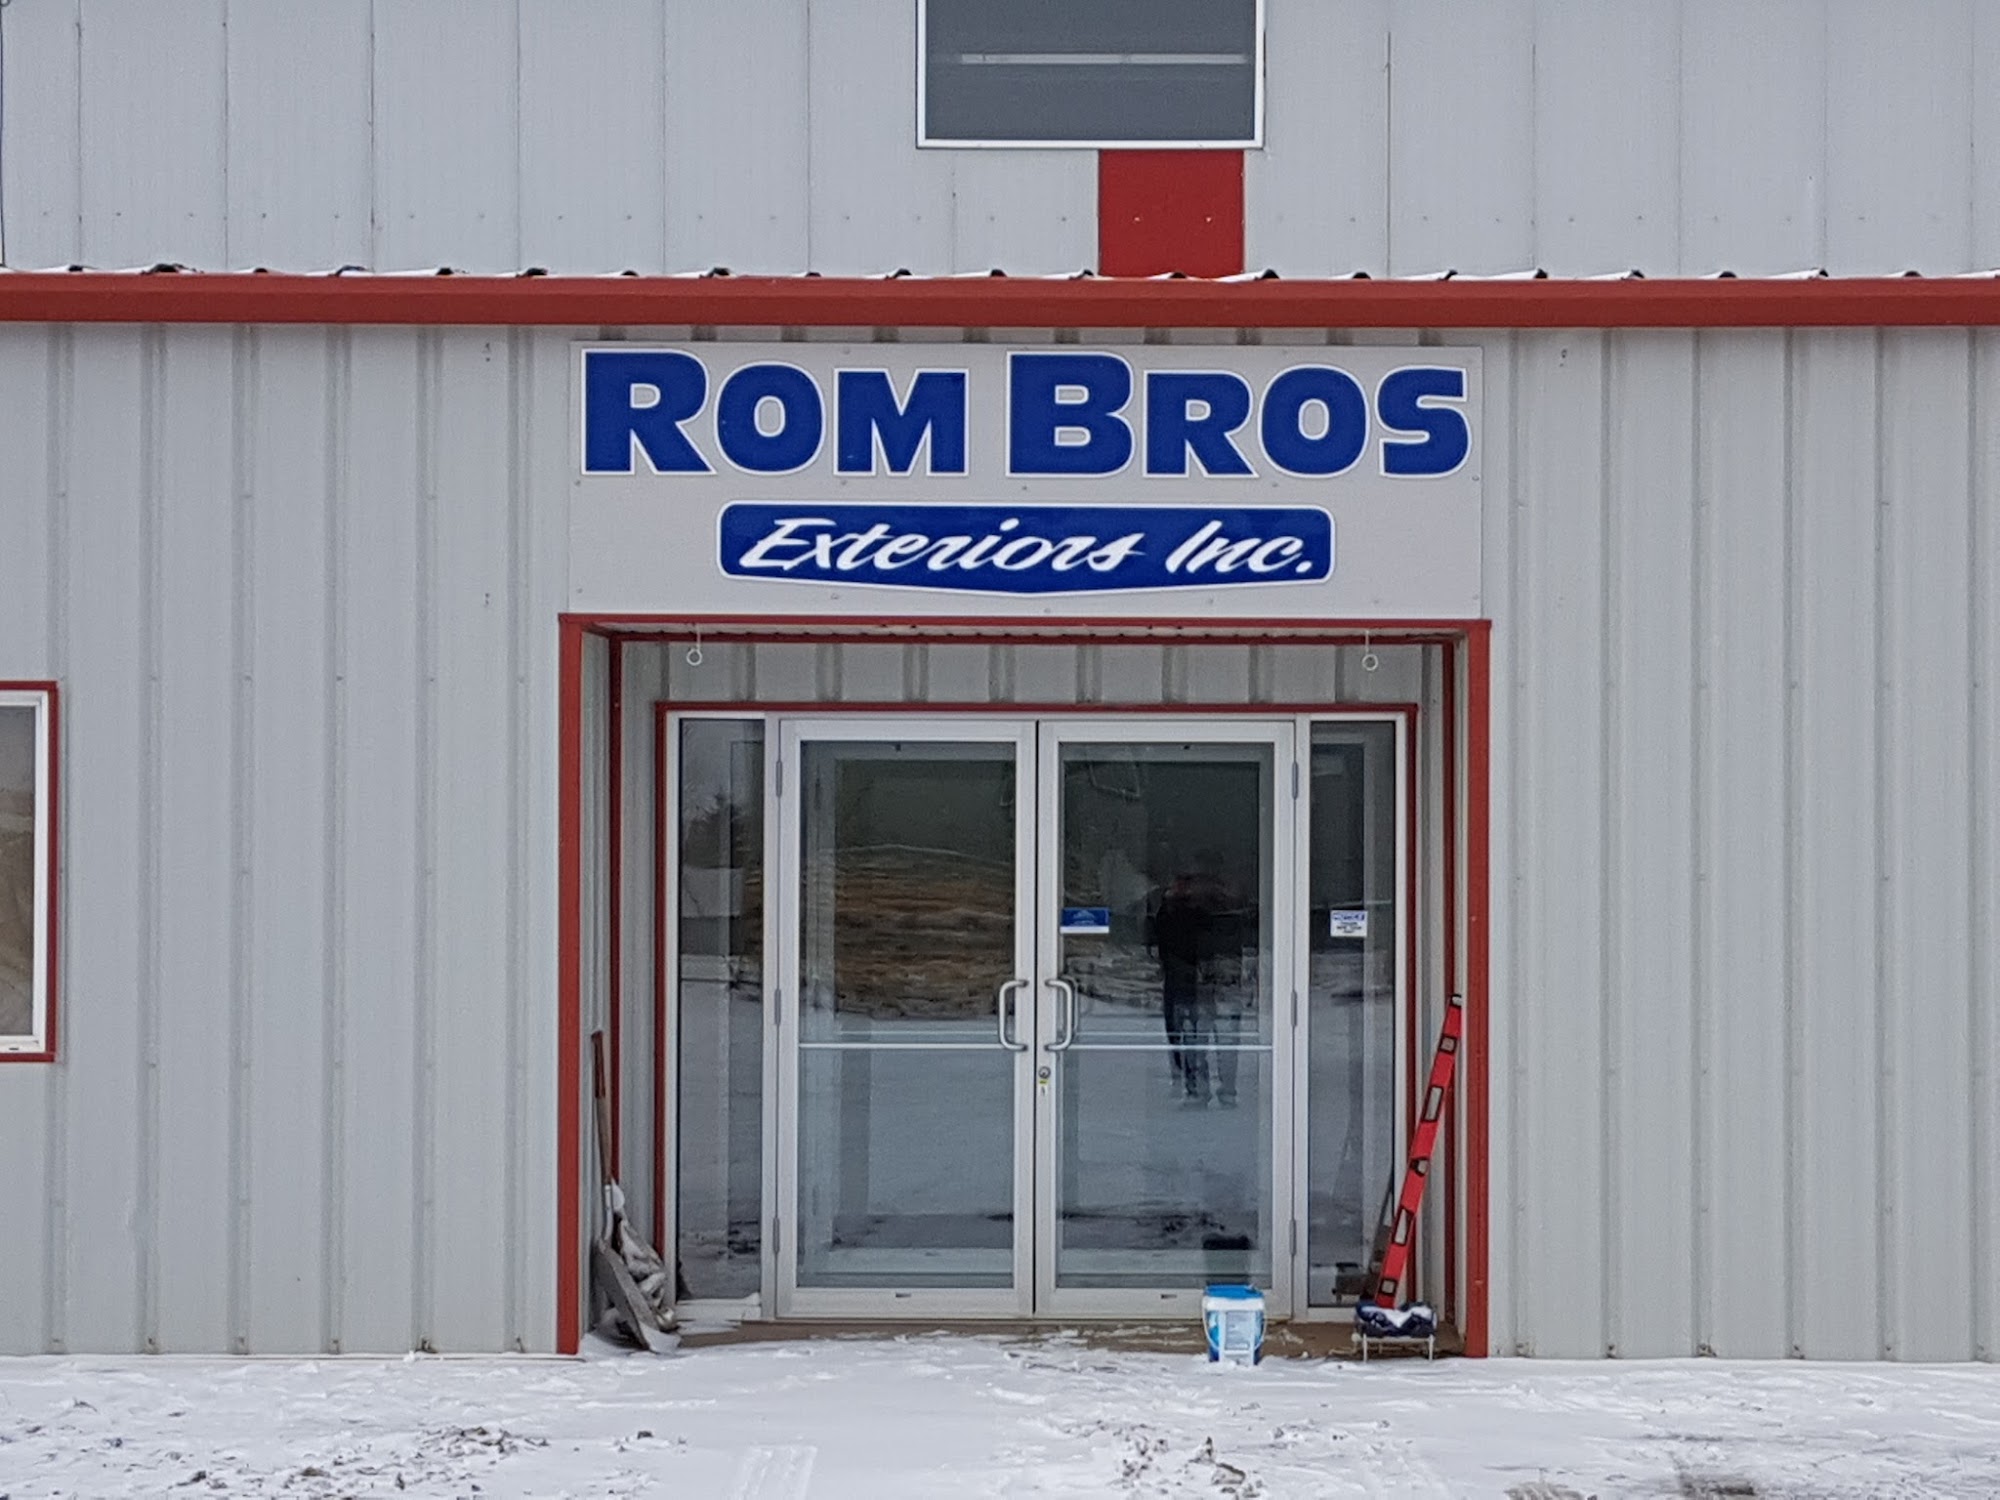 Rom Bros Exteriors Inc